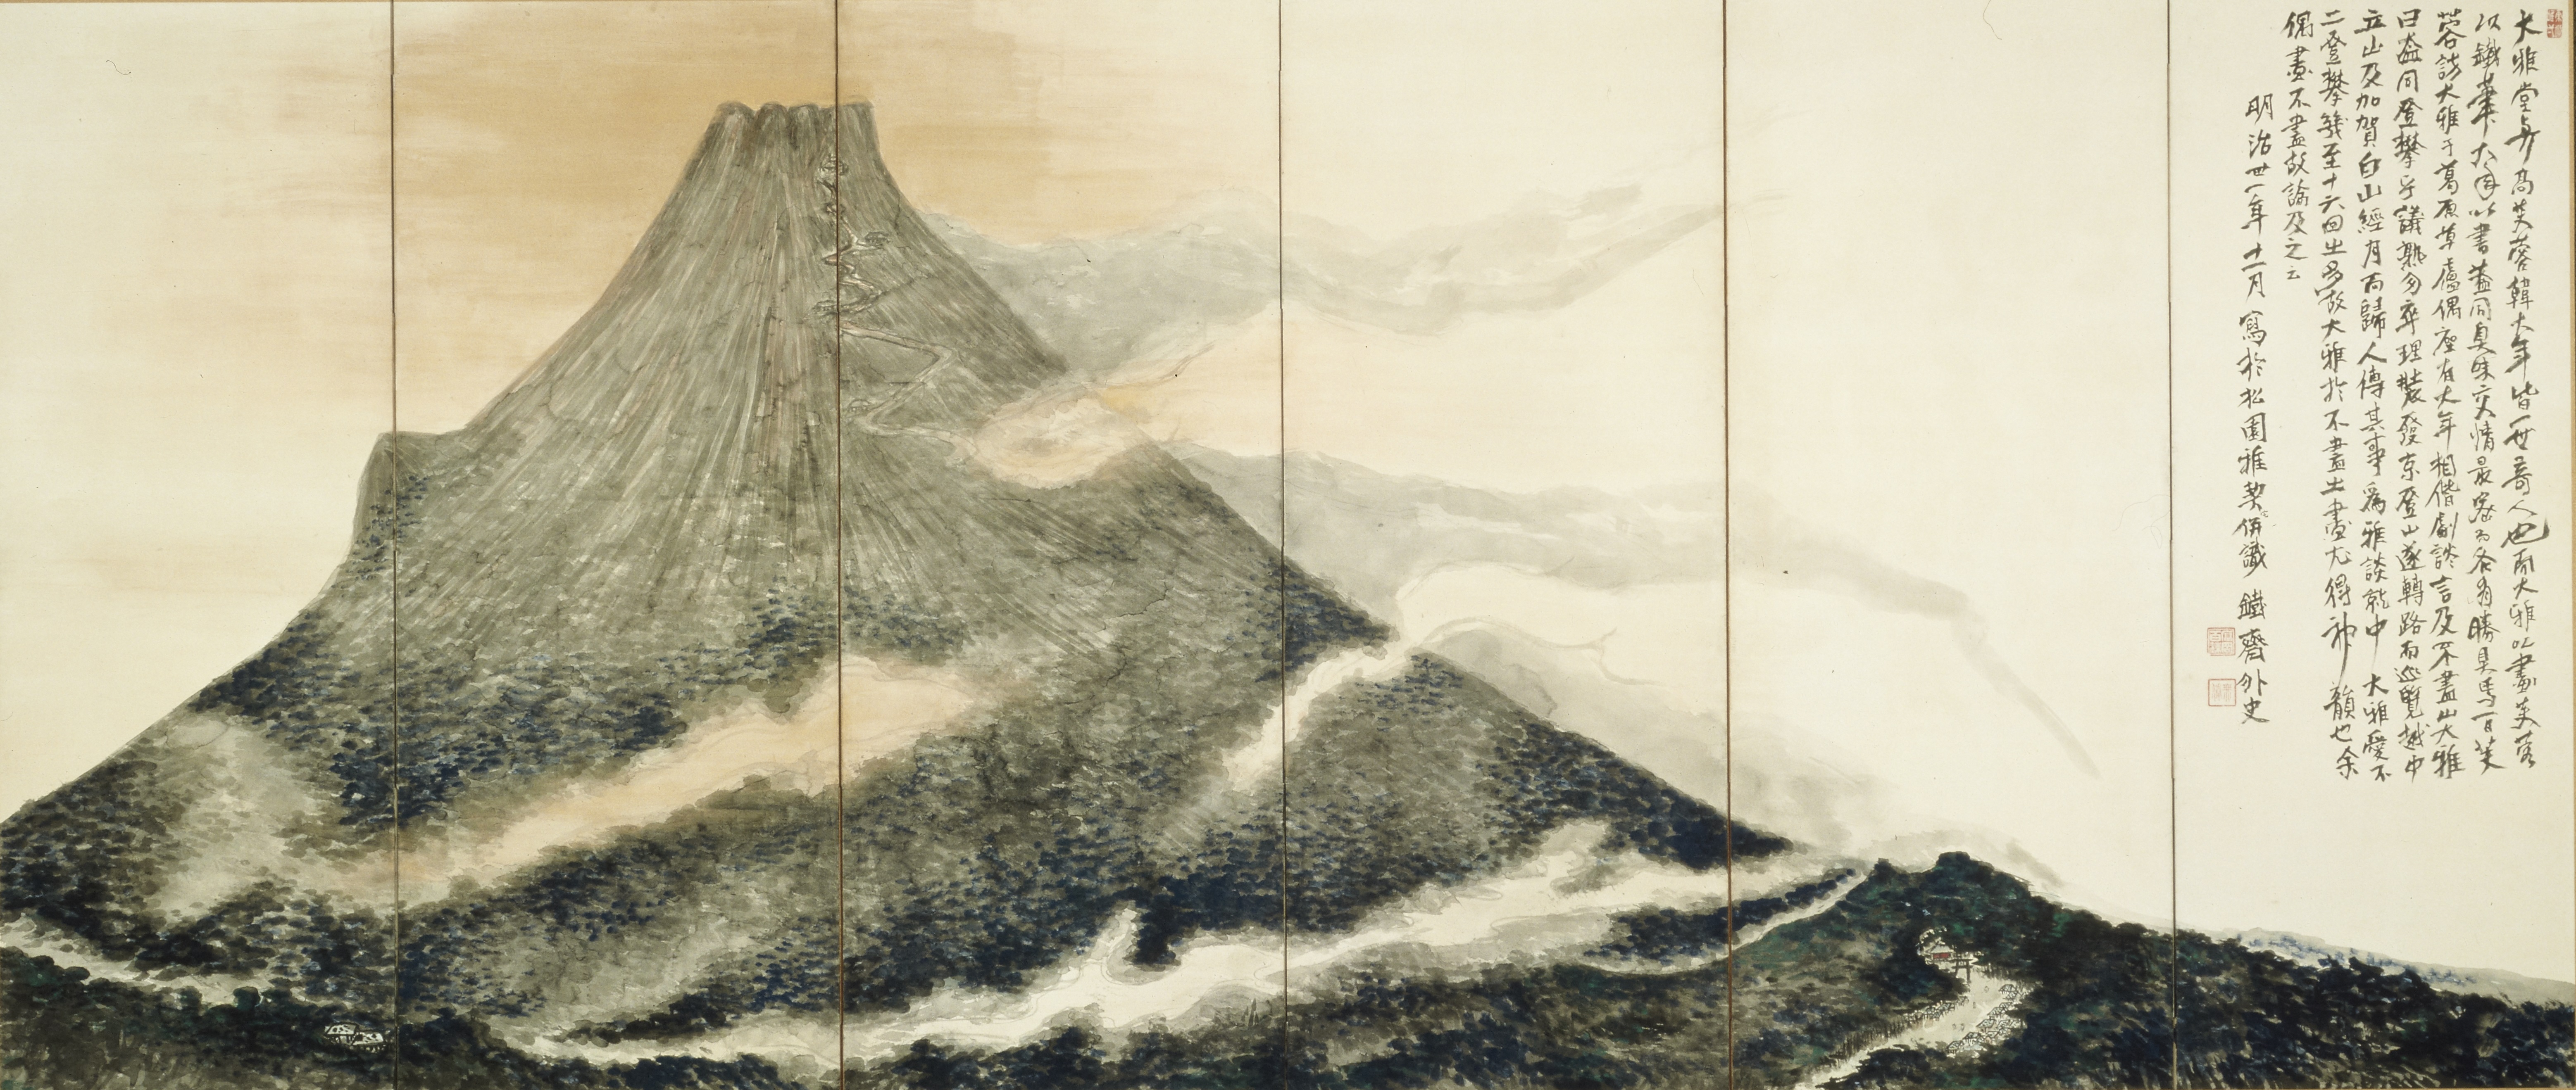 「没後100年 富岡鉄斎」が京都国立近代美術館で4月から開催 